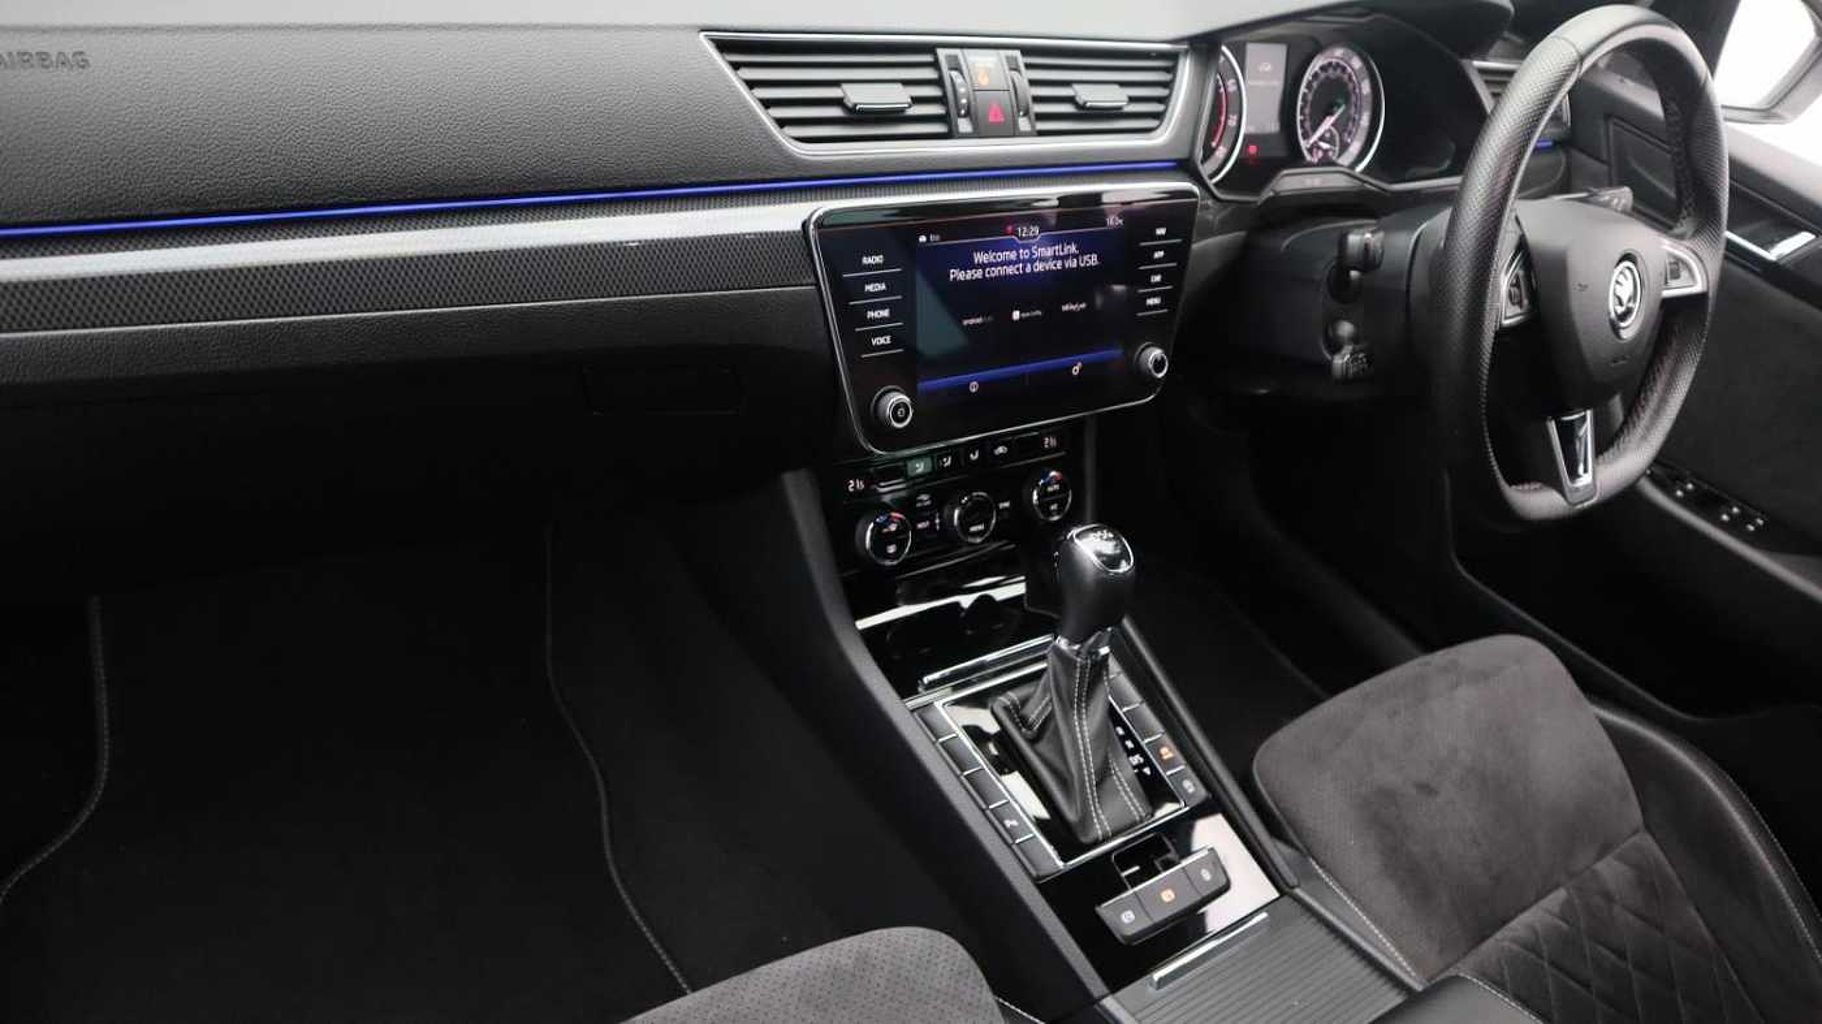 SKODA Superb 1.5 TSI (150ps) SportLine ACT DSG Hatchback